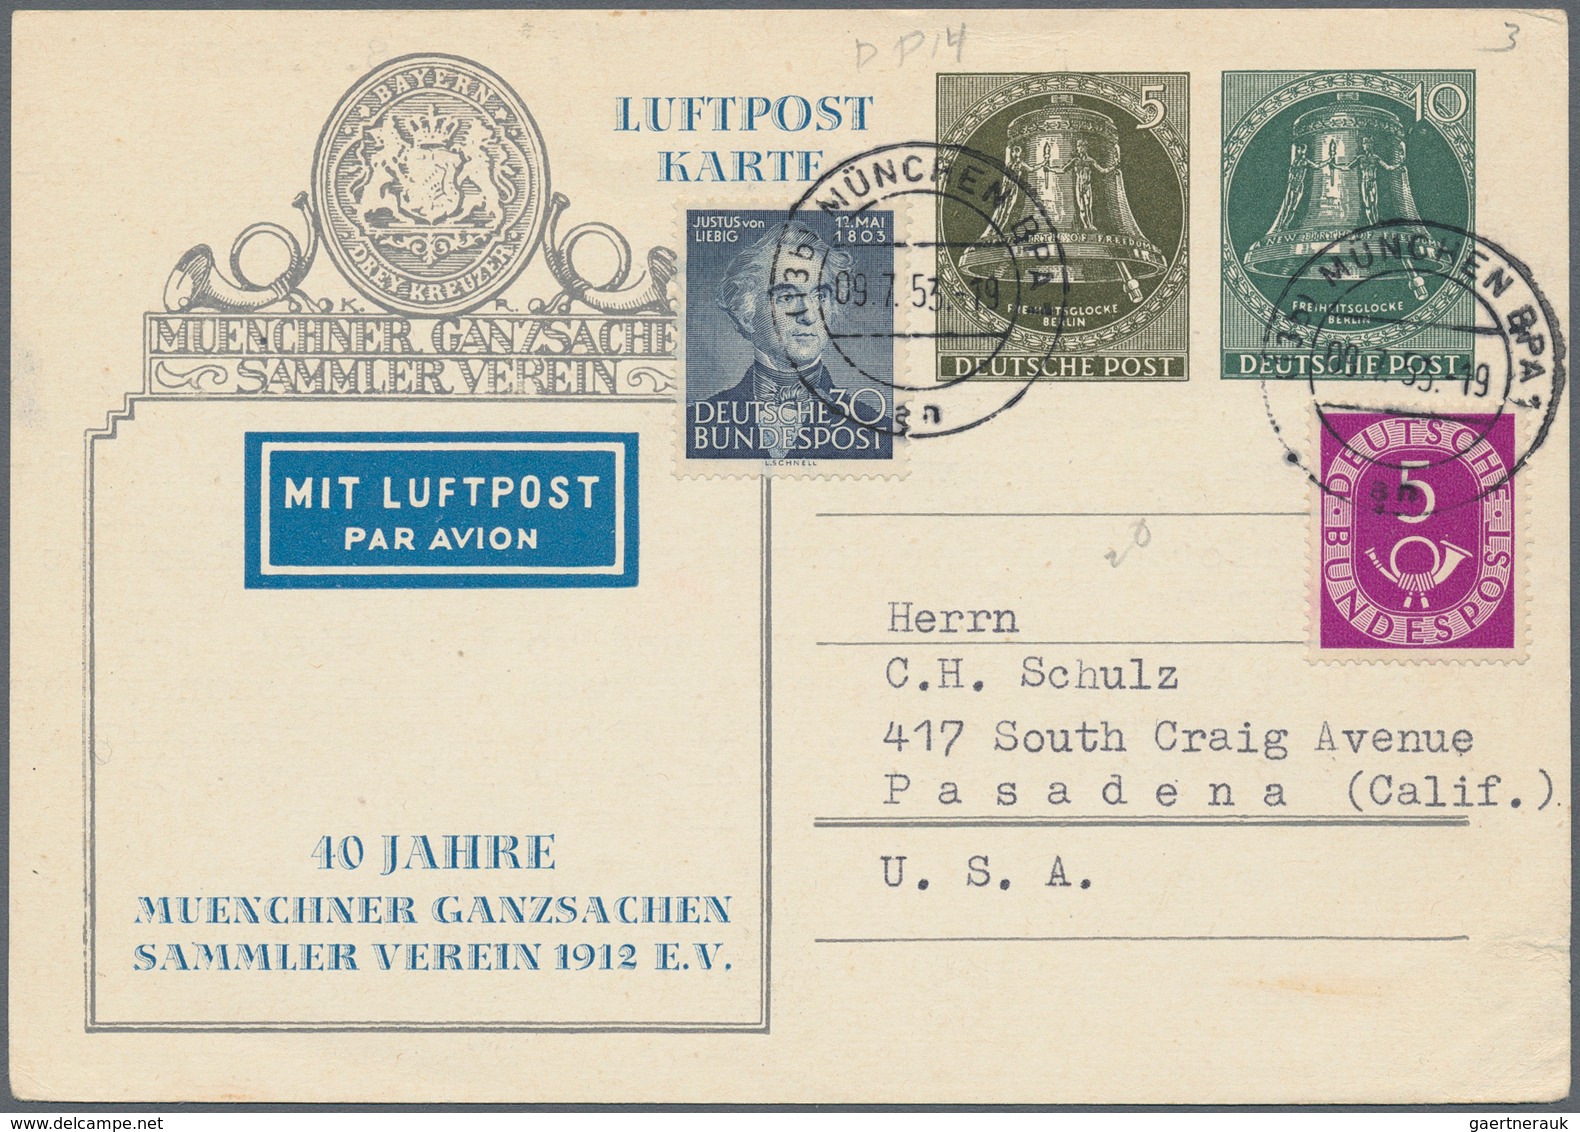 Berlin: 1951 - 1959, Posten von über 50 Privat-Ganzsachenkarten mit der Ausgabe Glocke, Klöppel link